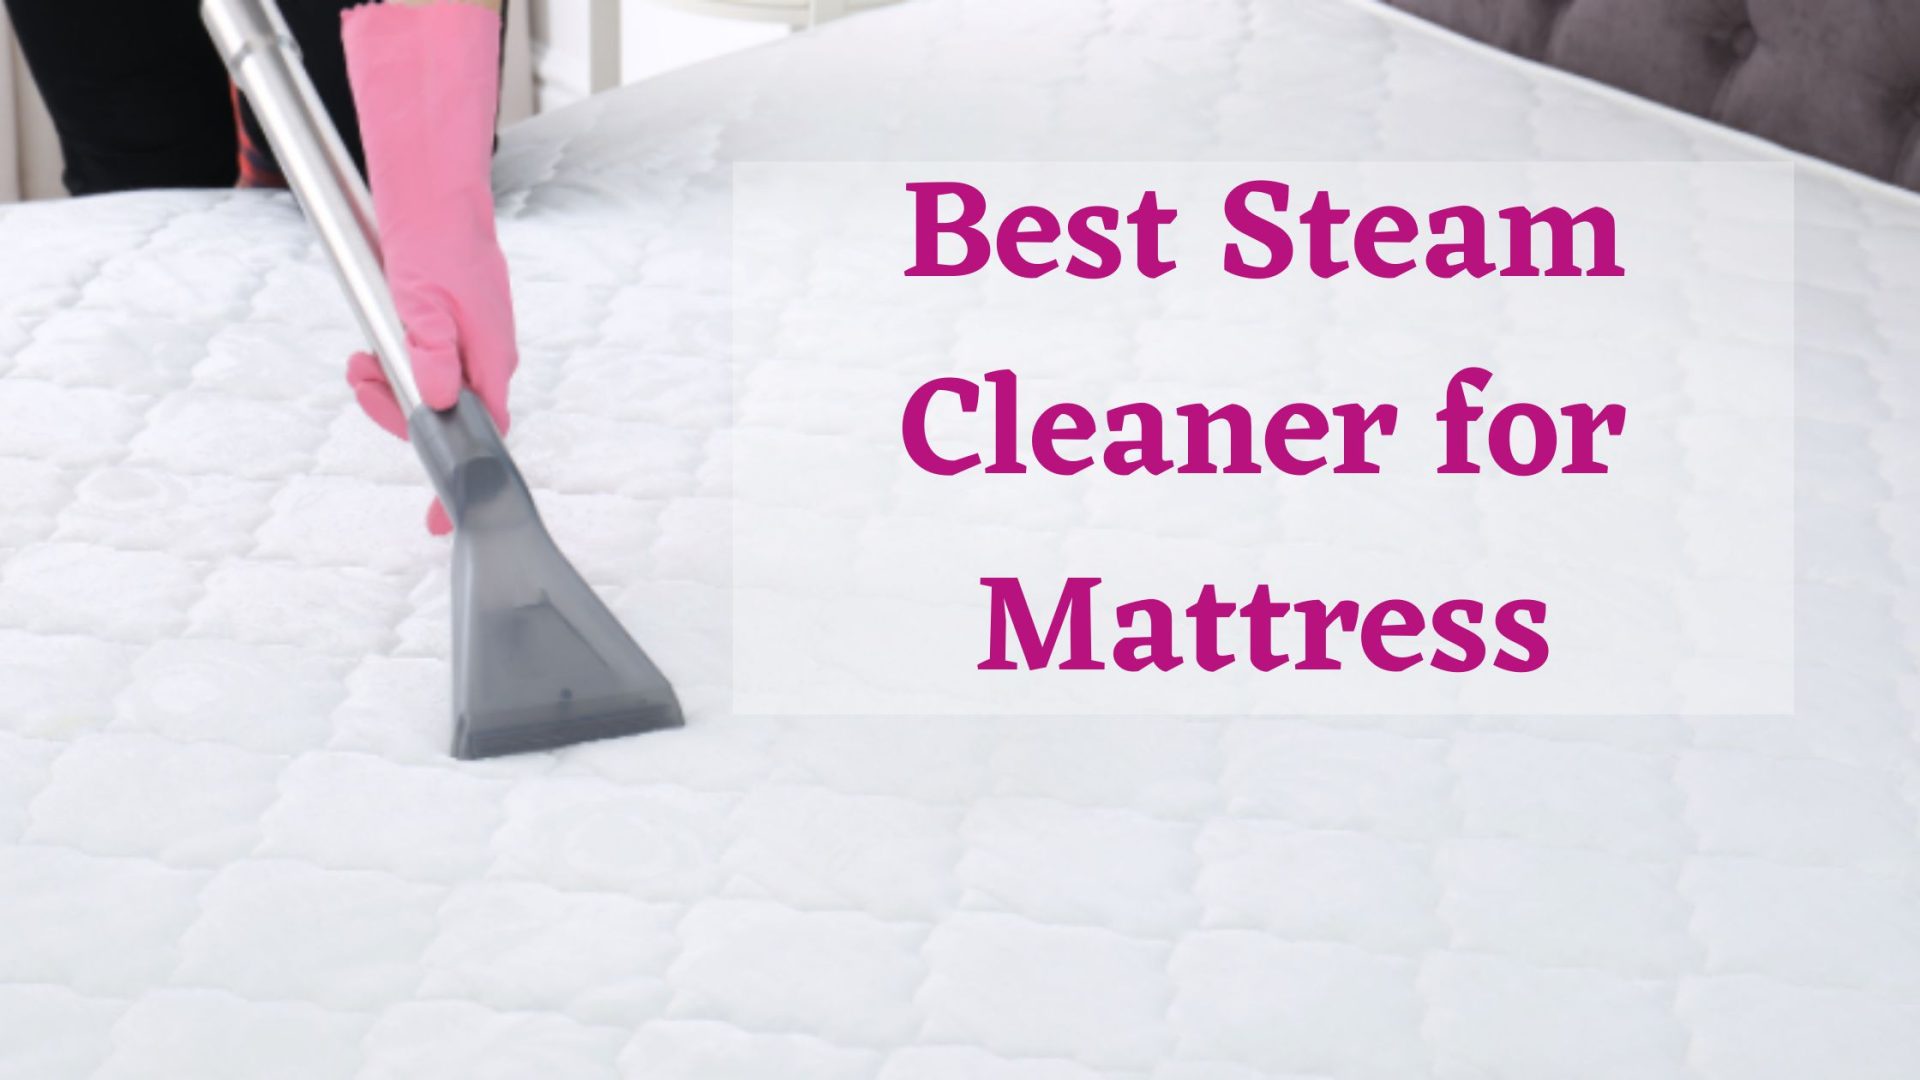 Best Steam Cleaner for Mattress